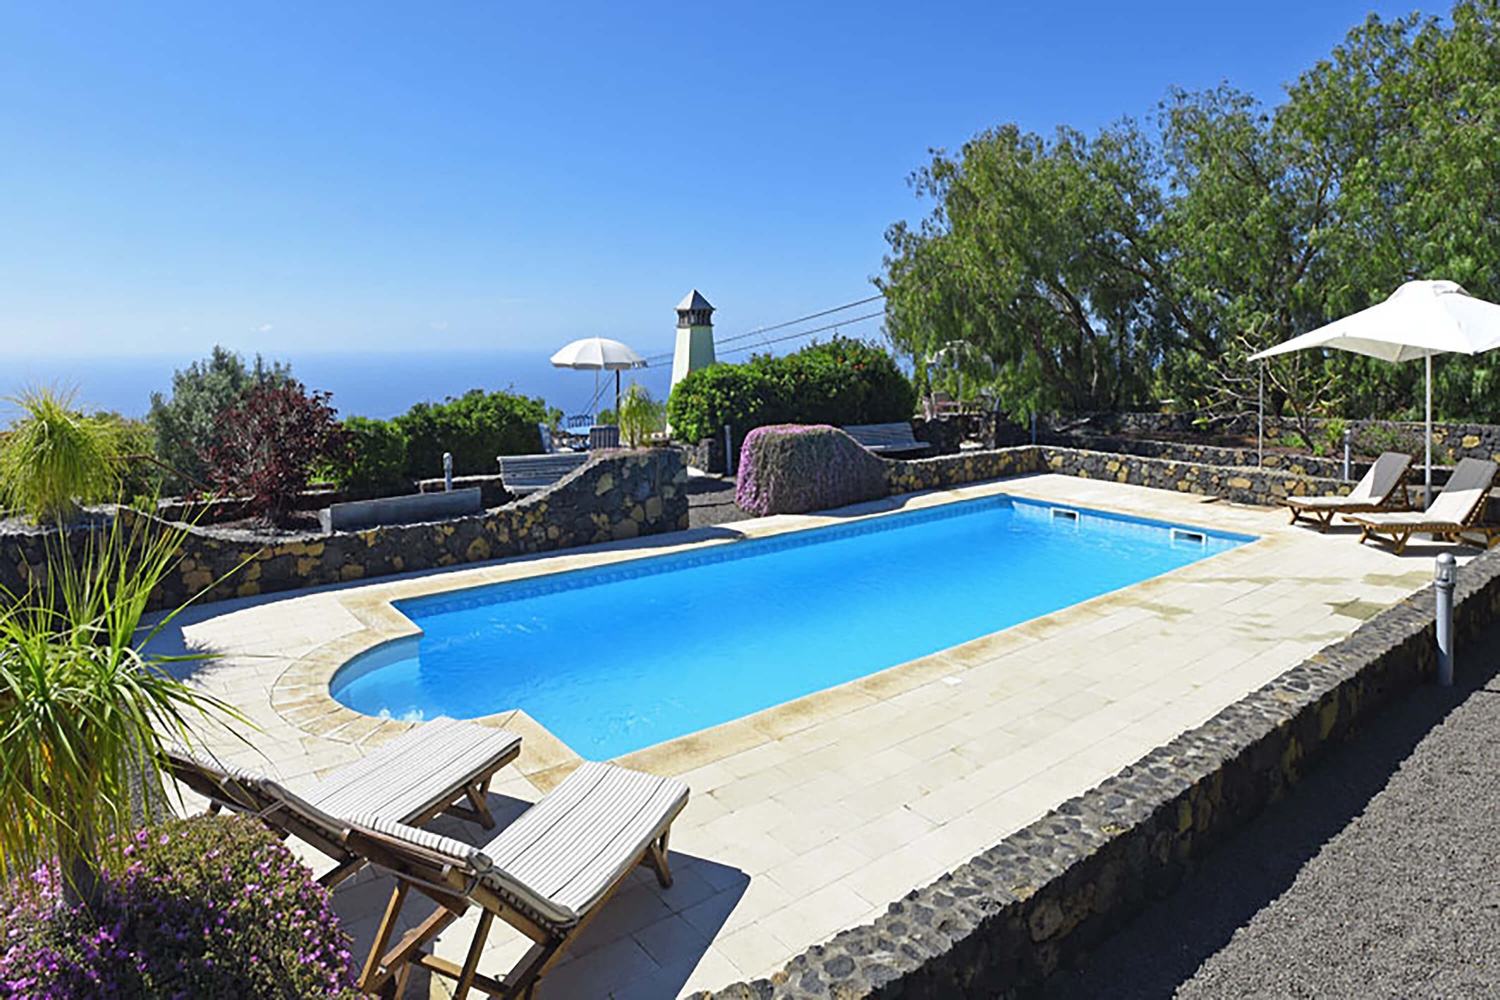 Feriehus til to personer udstyret med fremragende smag, med dejligt terrasseområde med glasskærme og stor fælles pool